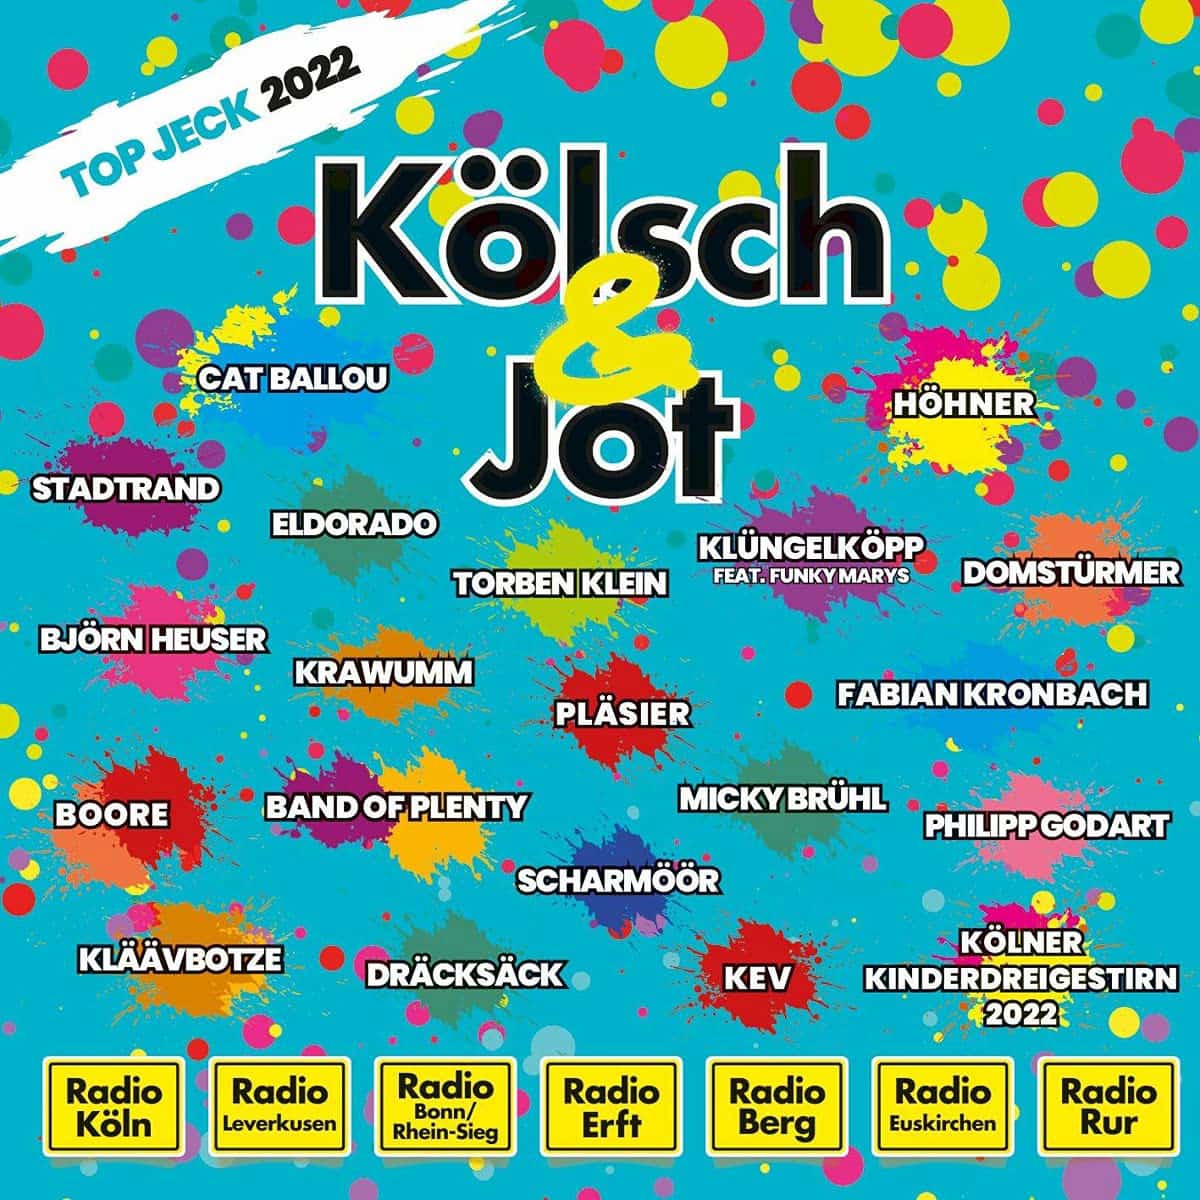 Kölsch & Jot - Top Jeck 2022 - Karnevals-CD Session 2021-2022